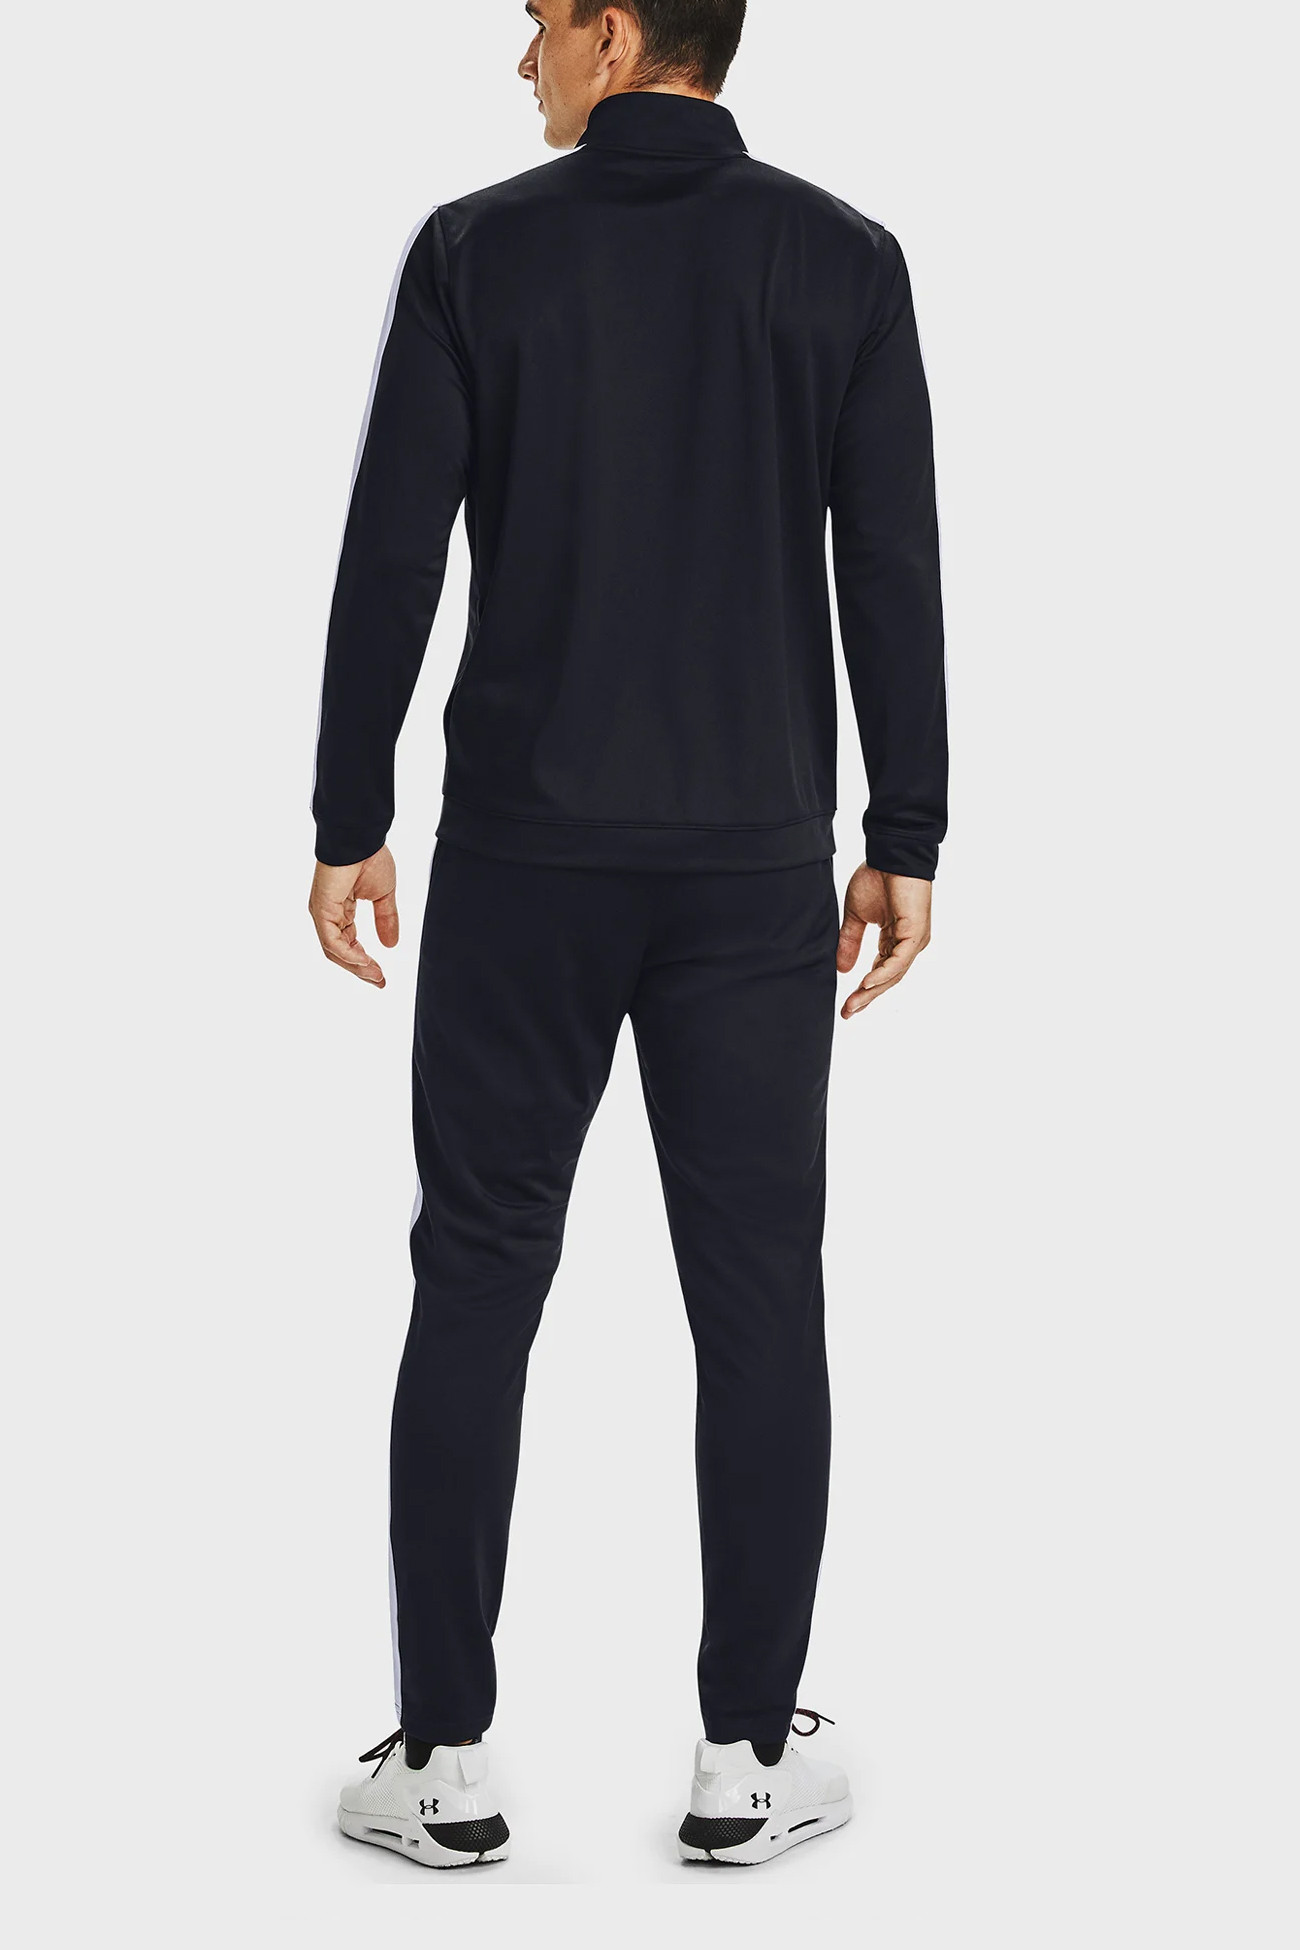 Костюм мужской Under Armour UA Knit Track Suit черный 1357139-001 изображение 4